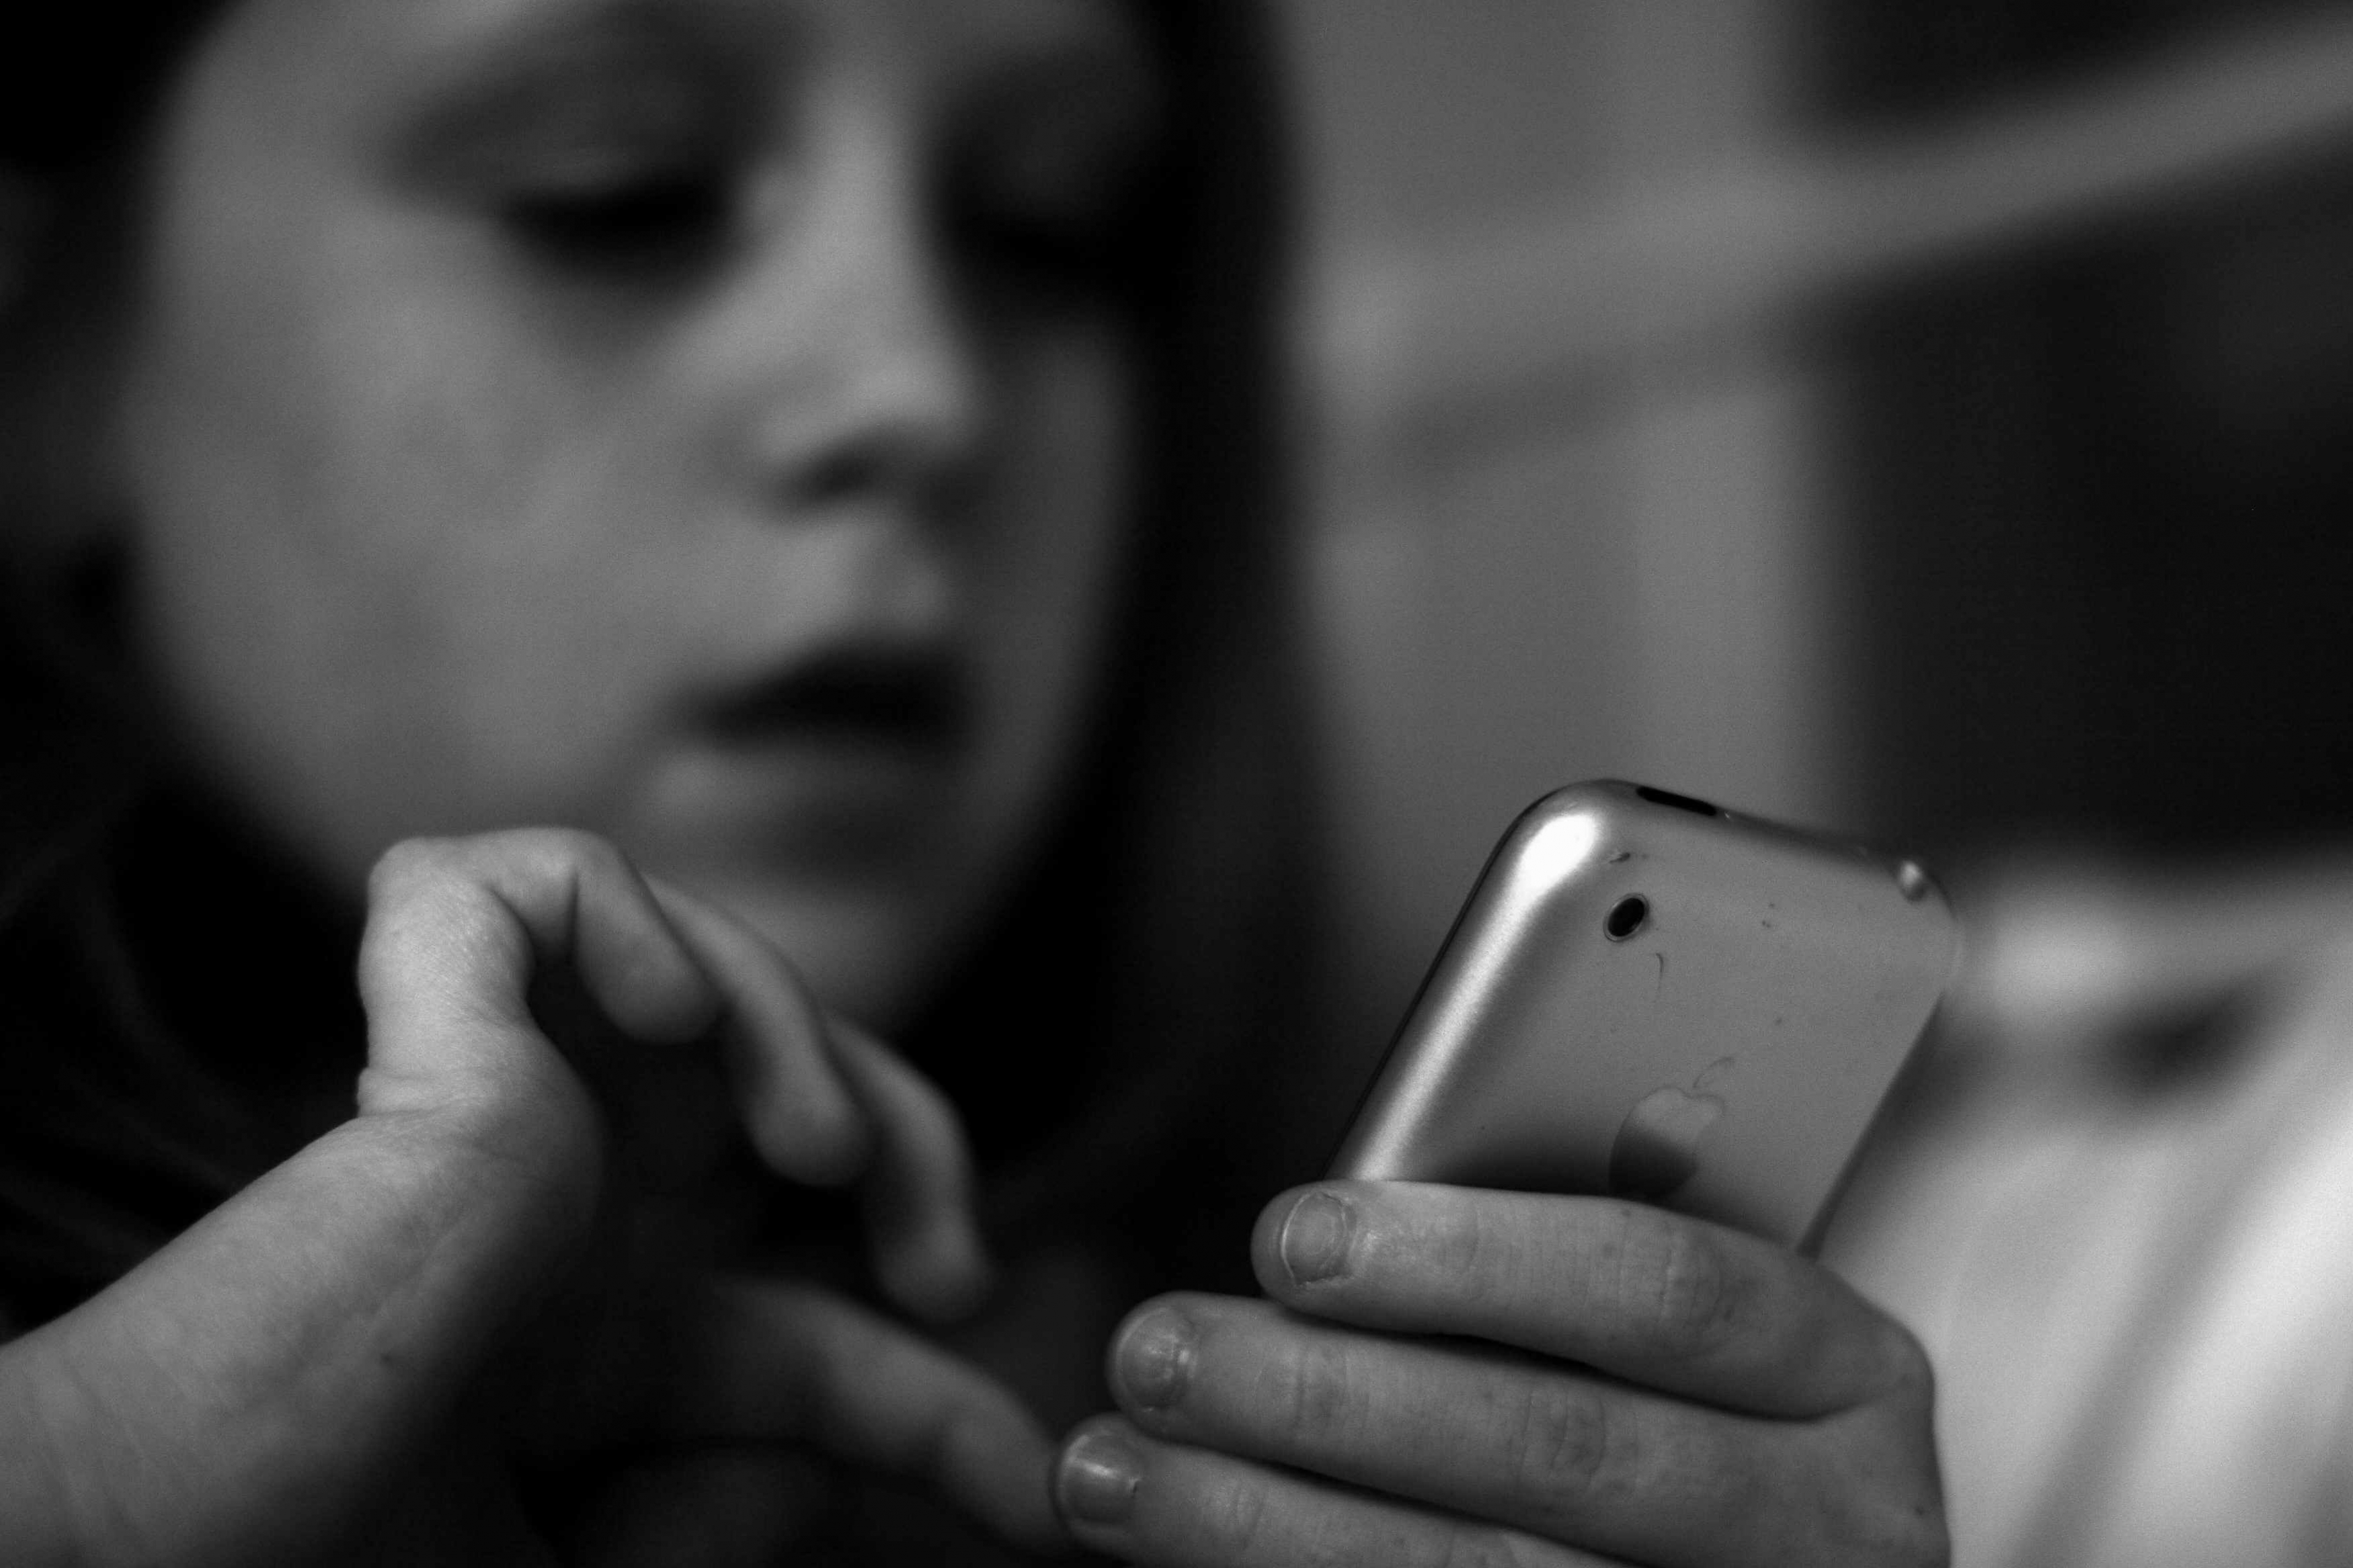 O Melhor App de Controle dos Pais para Monitorar iPhone dos Filhos